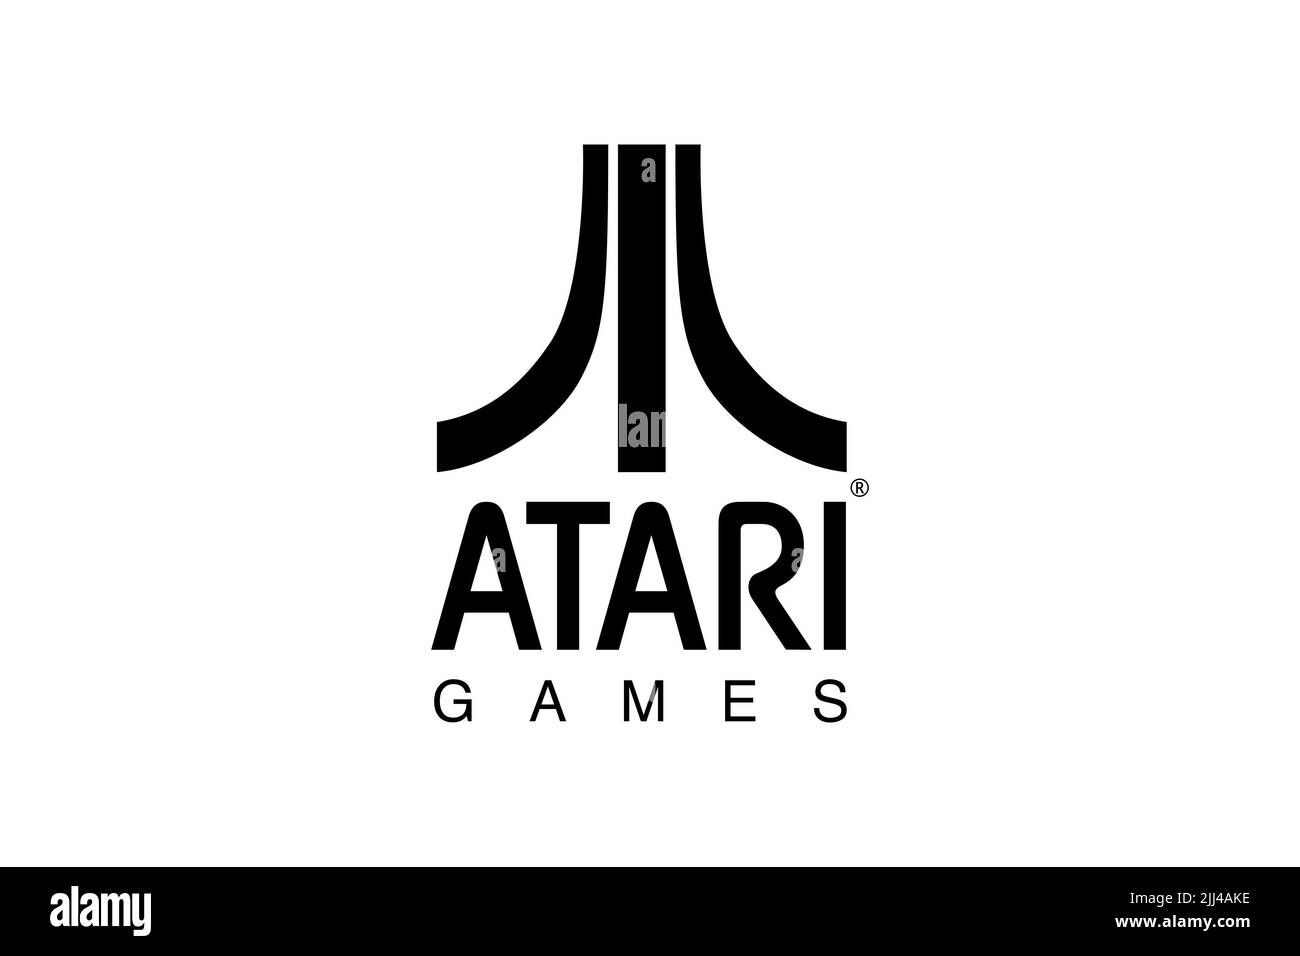 Atari Games, Logo, White background Stock Photo